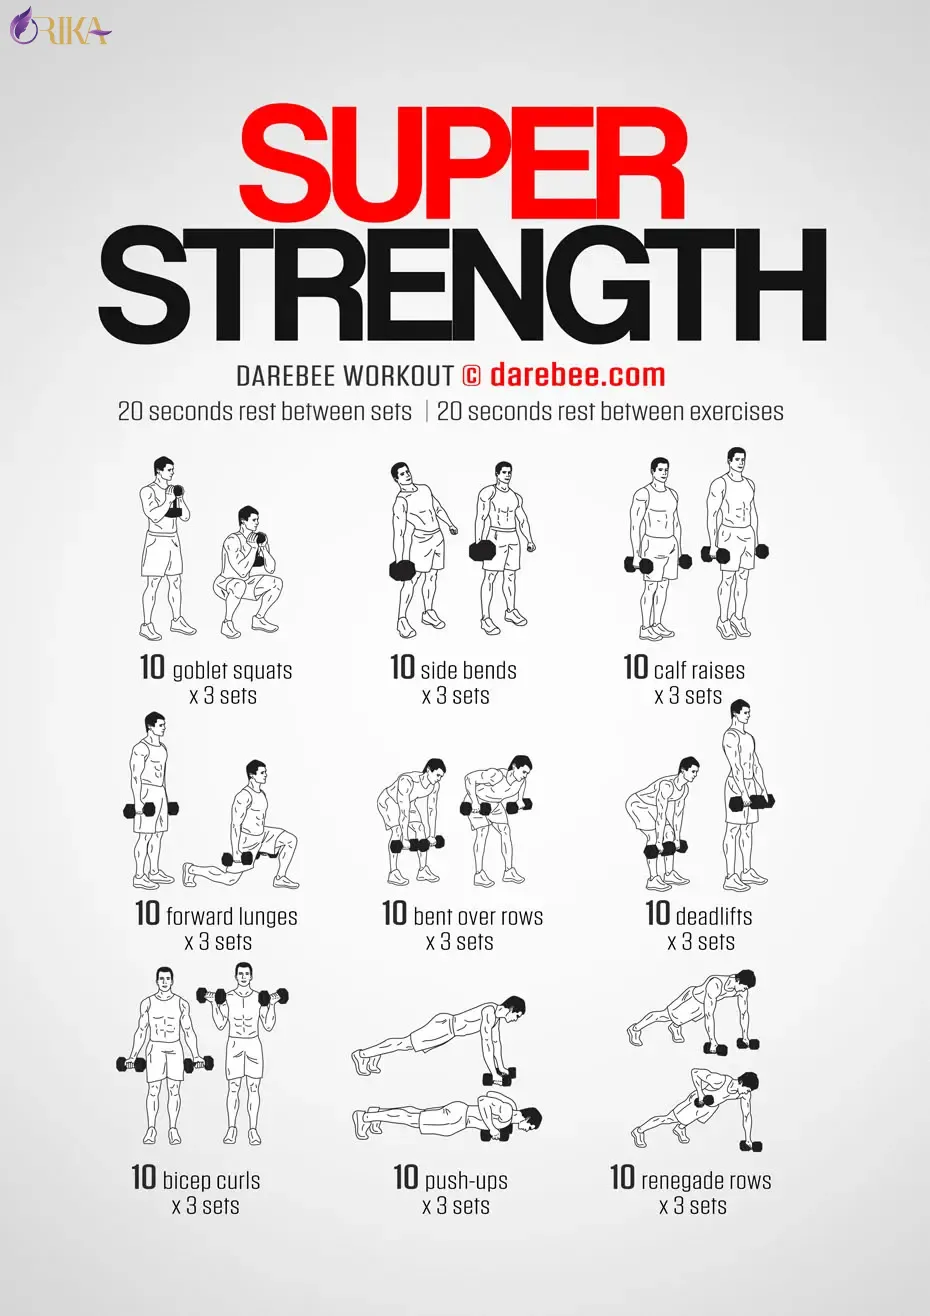 تمرینات قدرتی با وزنه: این تمرینات به شما کمک می کند تا عضلات خود را تقویت کرده و به تناسب اندام عضلانی برسید.